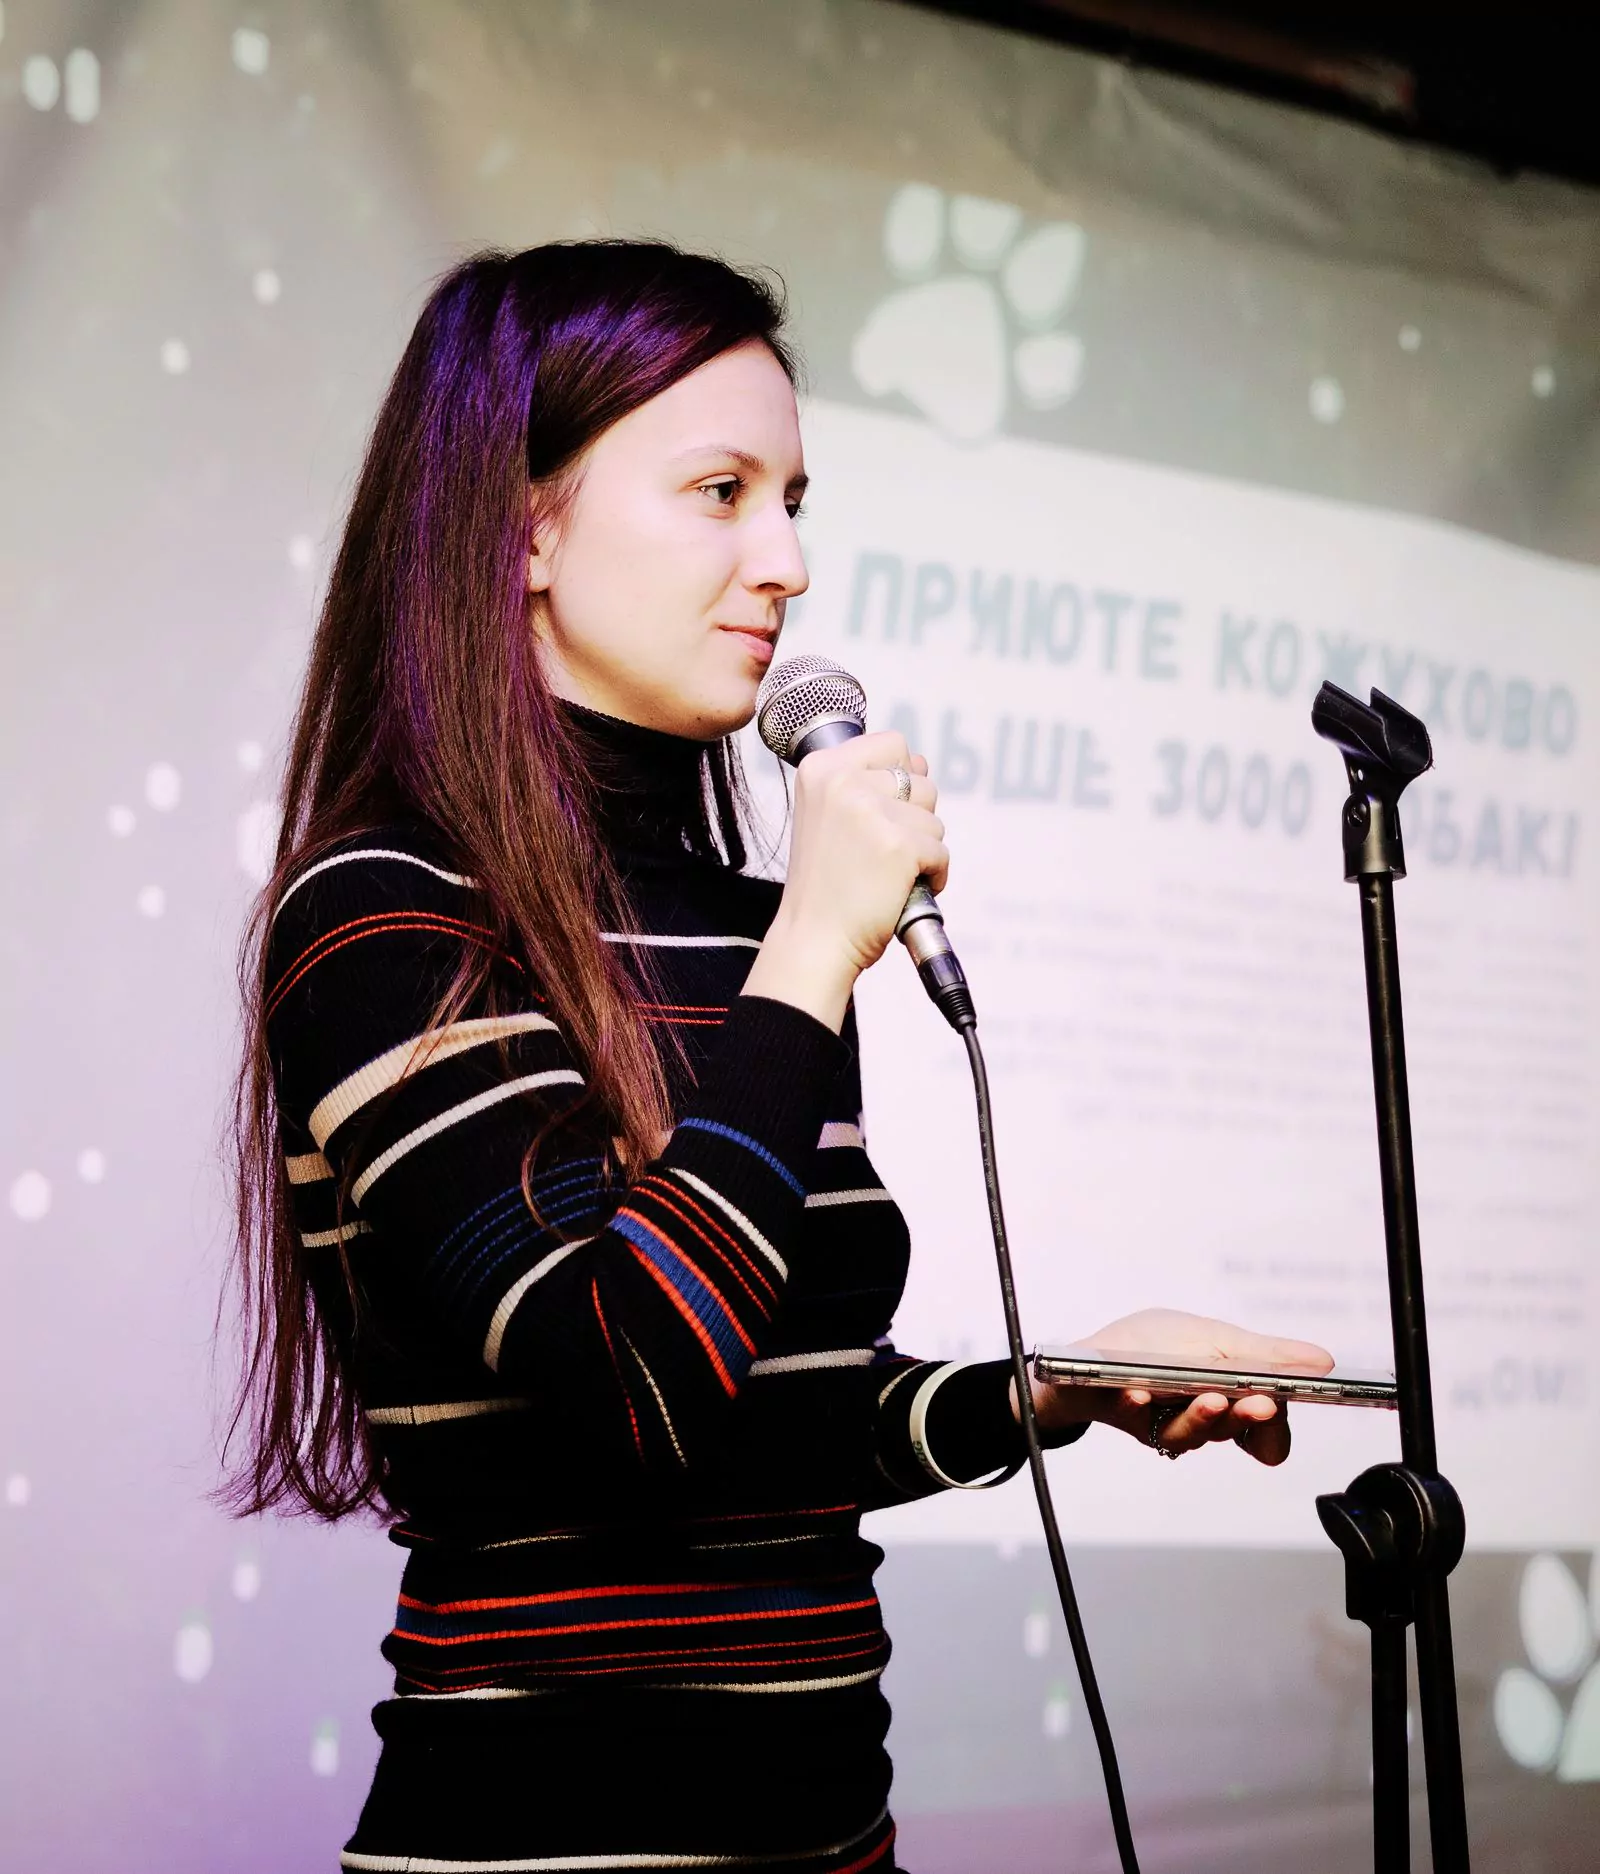 Анастасия Шаронова, организатор благотворительного мероприятия в баре «Собаки в тумане»